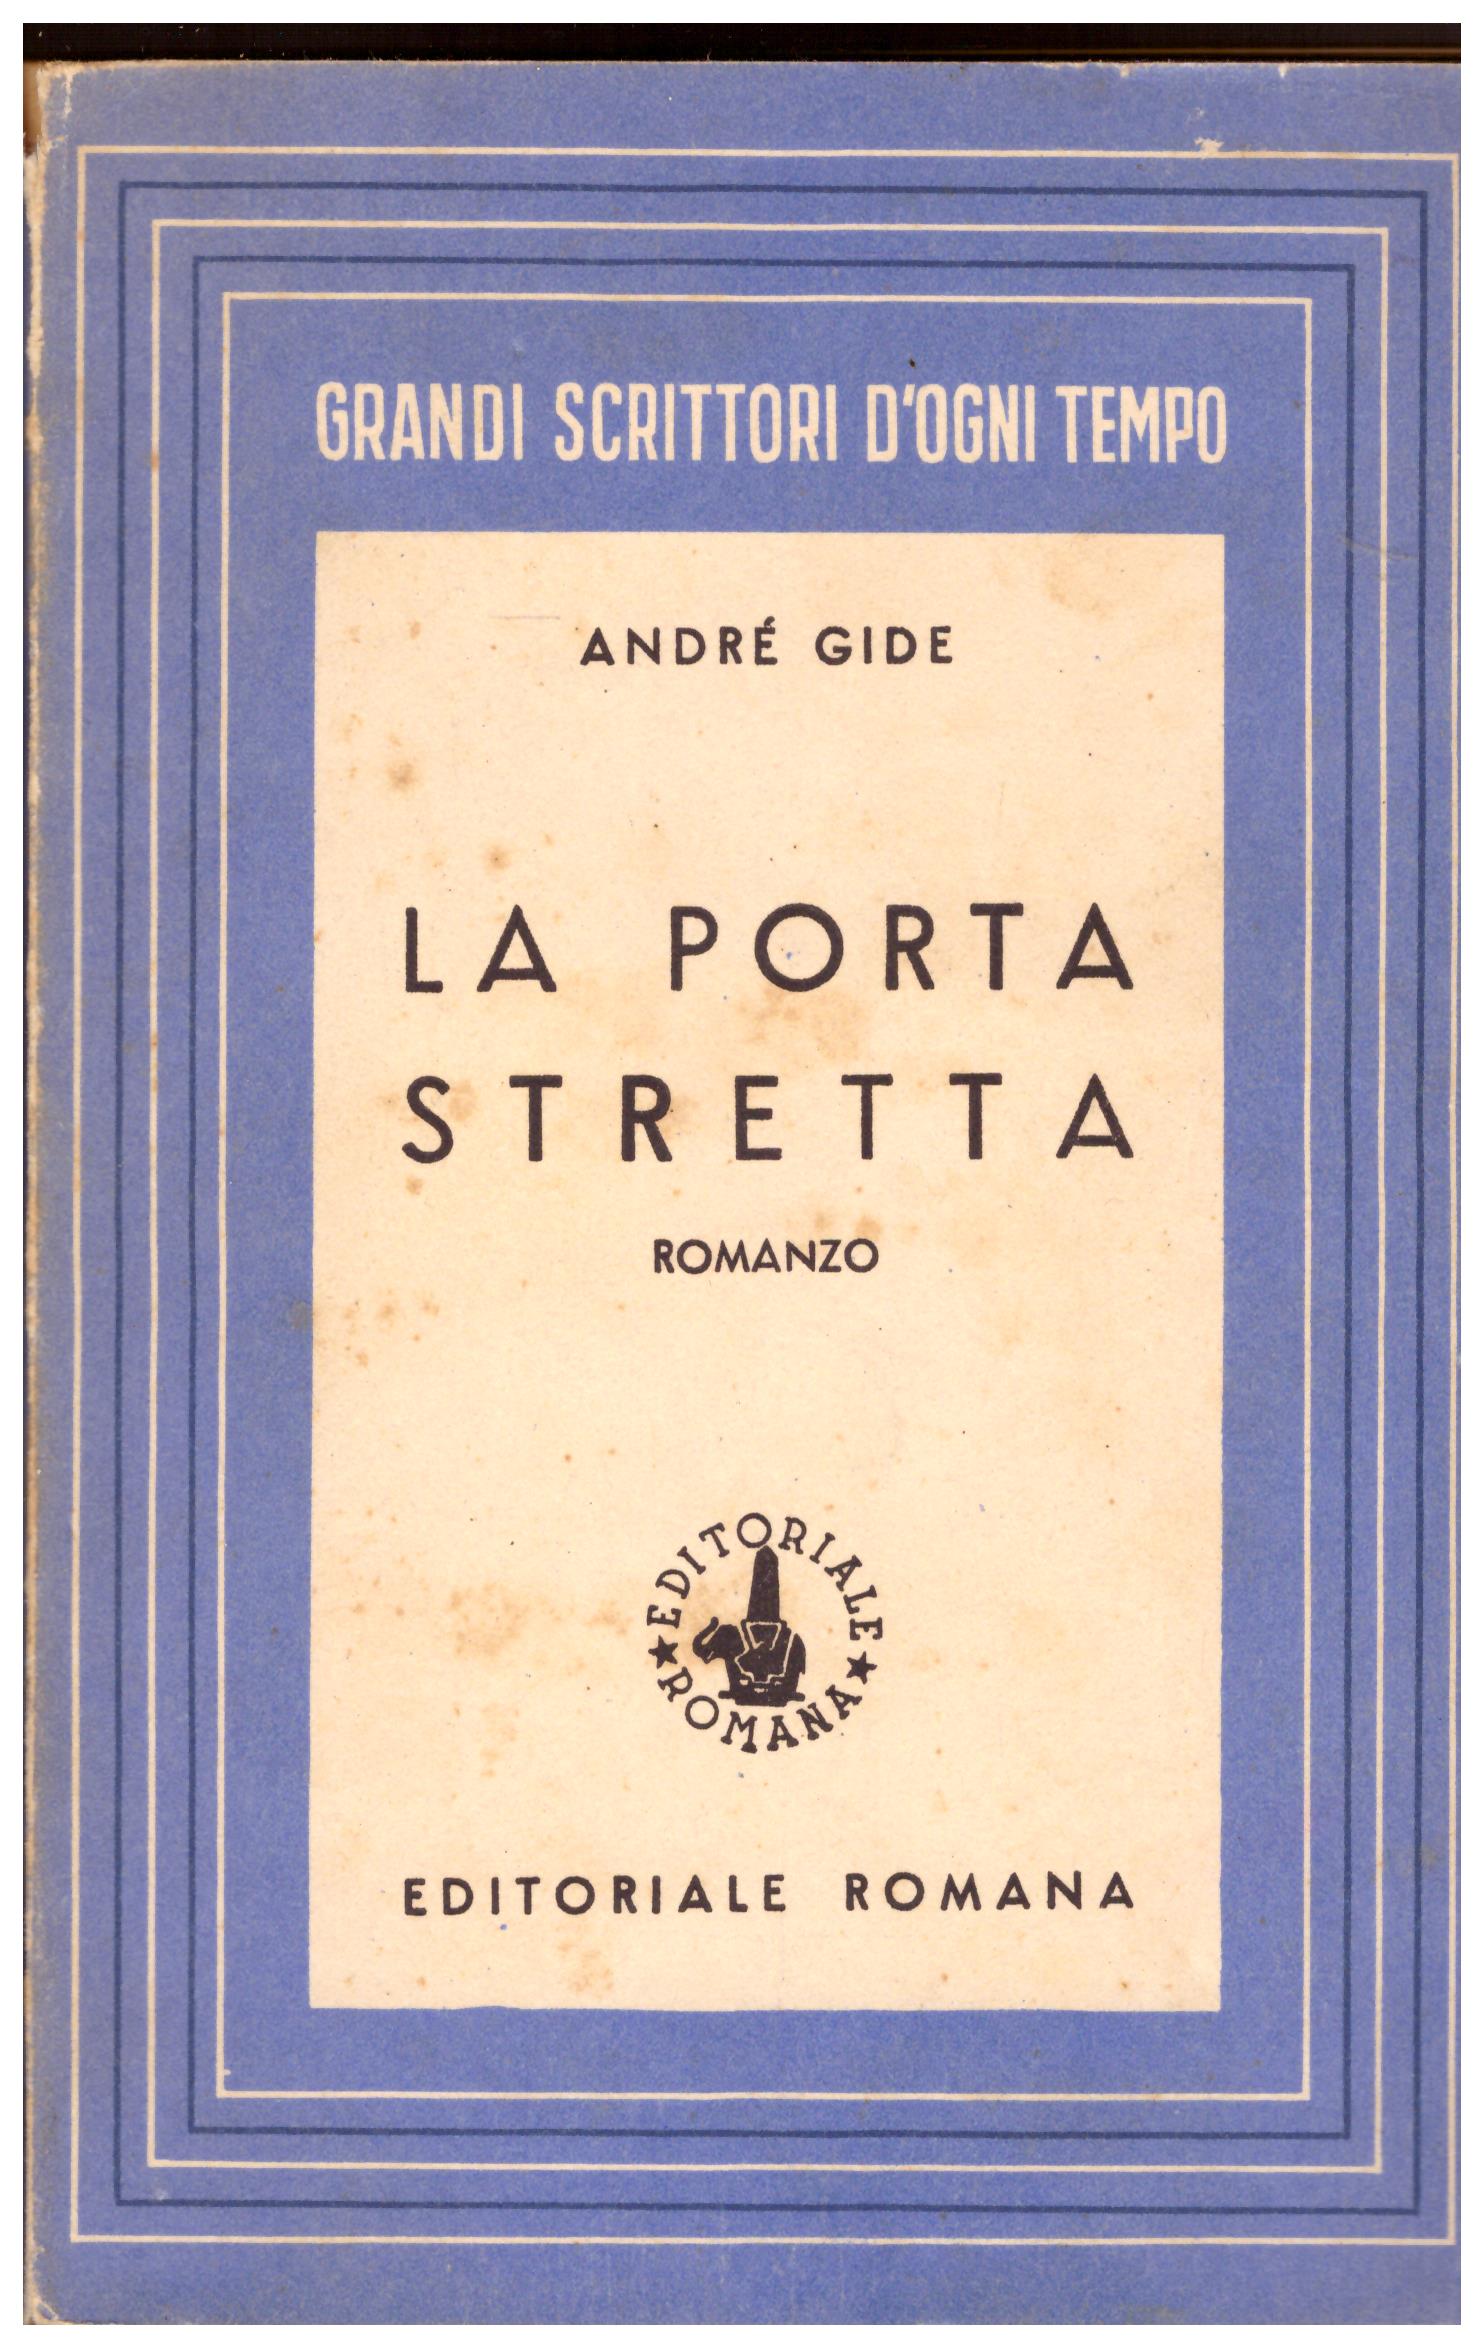 Titolo: La porta stretta Autore: Andrè Gide Editore: editoriale romana, 1944